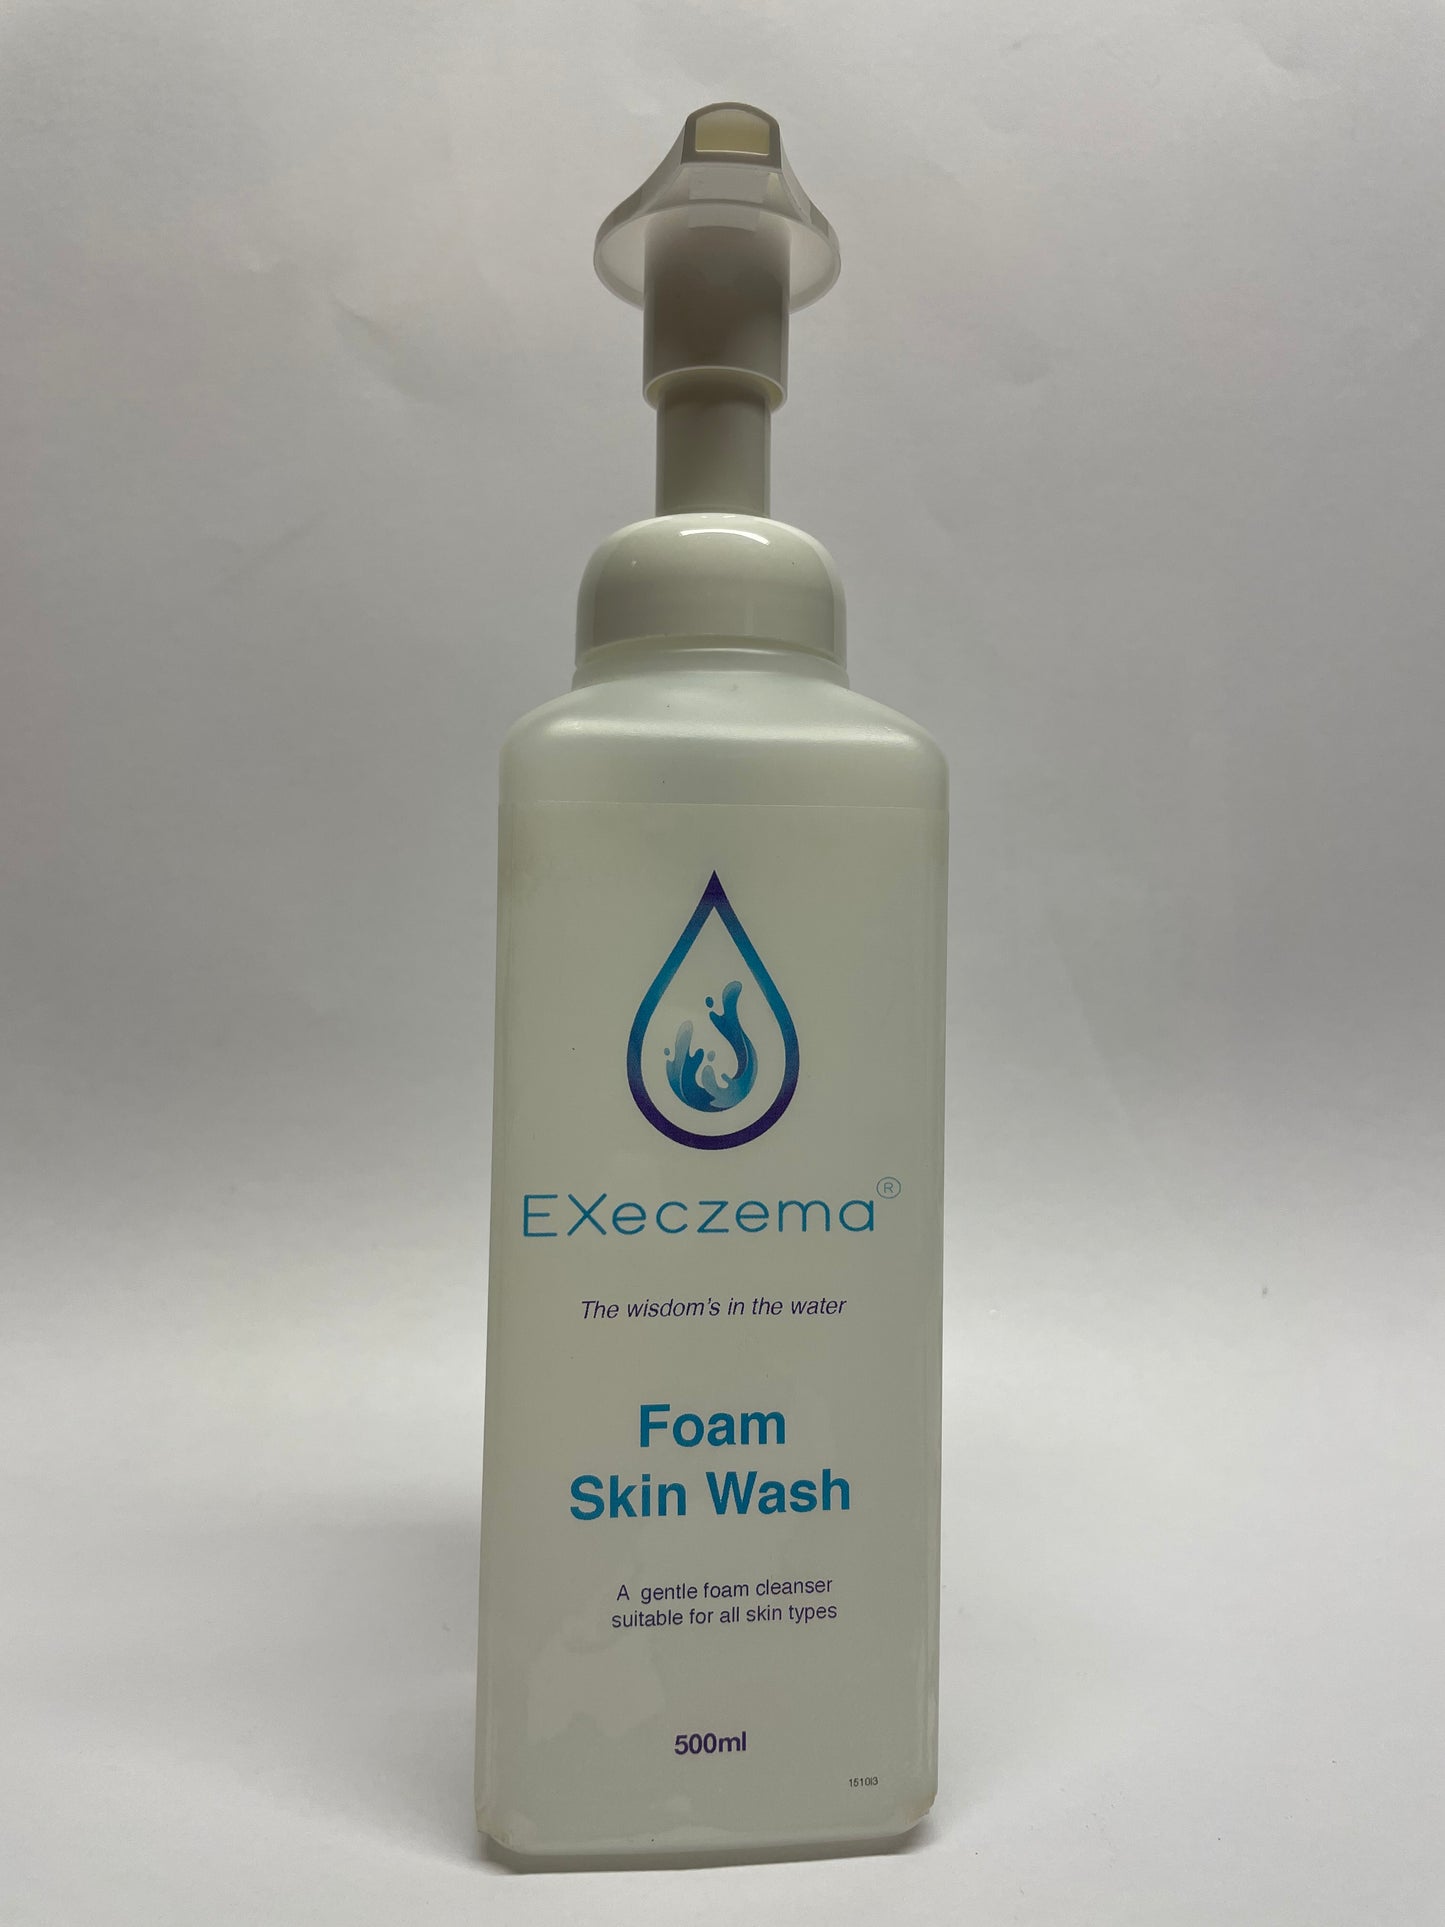 Eczema Foam Skin Wash - EXeczema